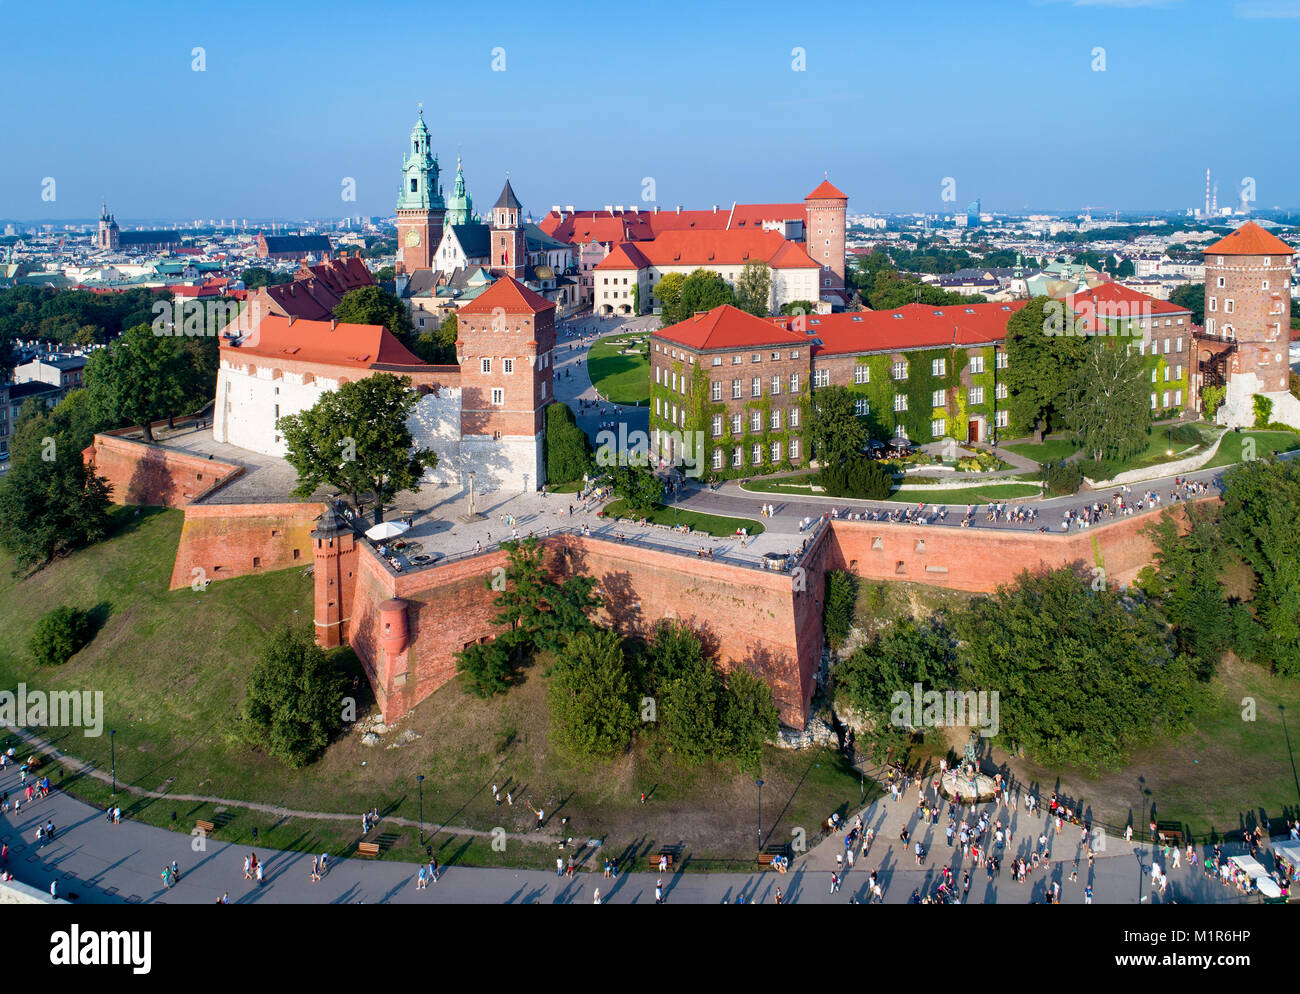 Cracovie, Pologne. La colline de Wawel avec le Château Royal, la cathédrale, murs de défense, parc, promenade et randonnée personnes méconnaissables Banque D'Images